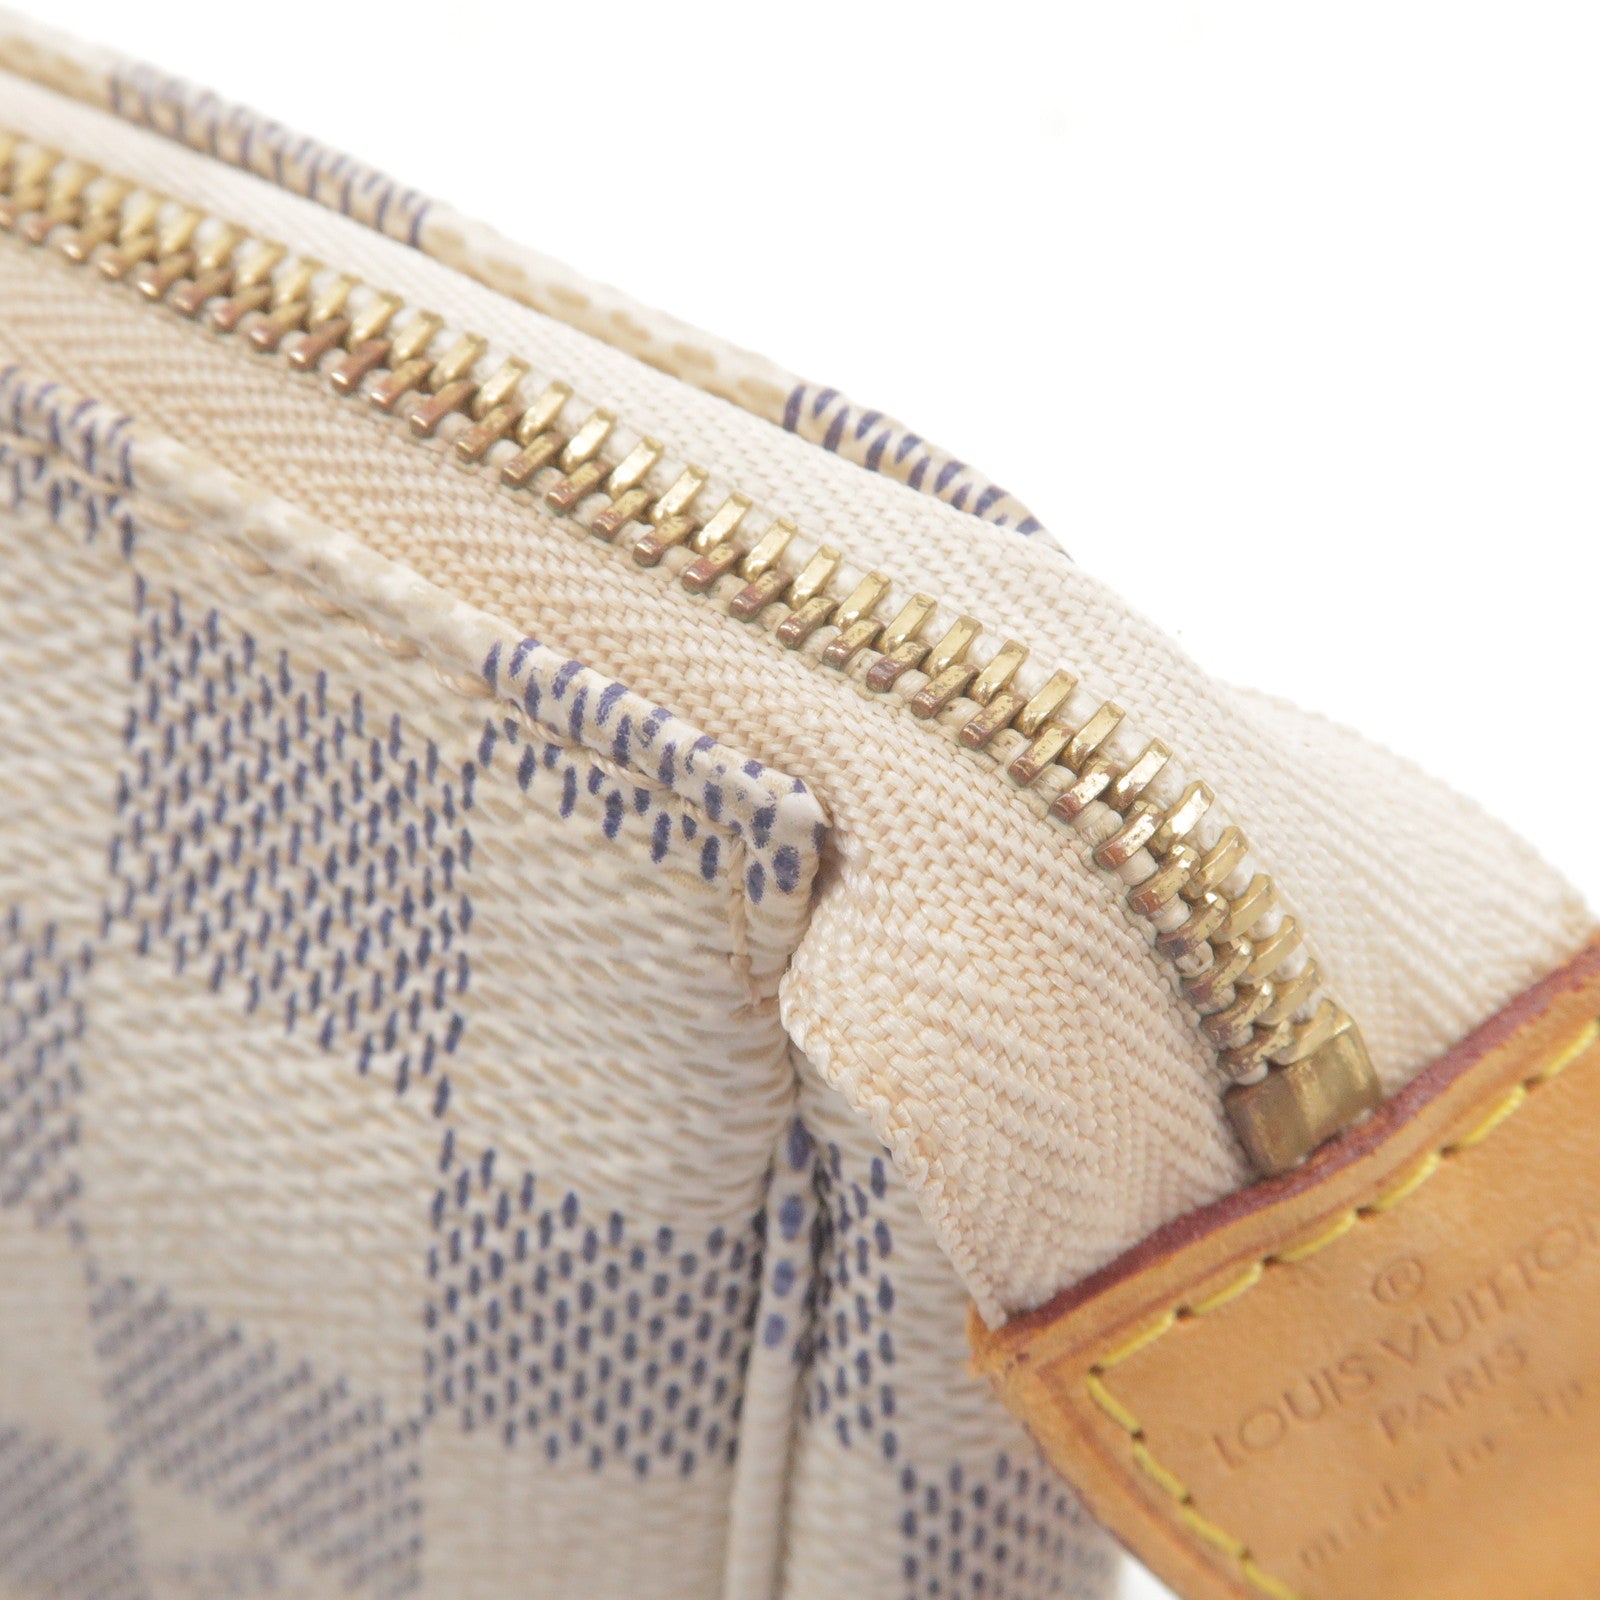 Louis Vuitton borsa a tracolla Pochette Accessories vintage